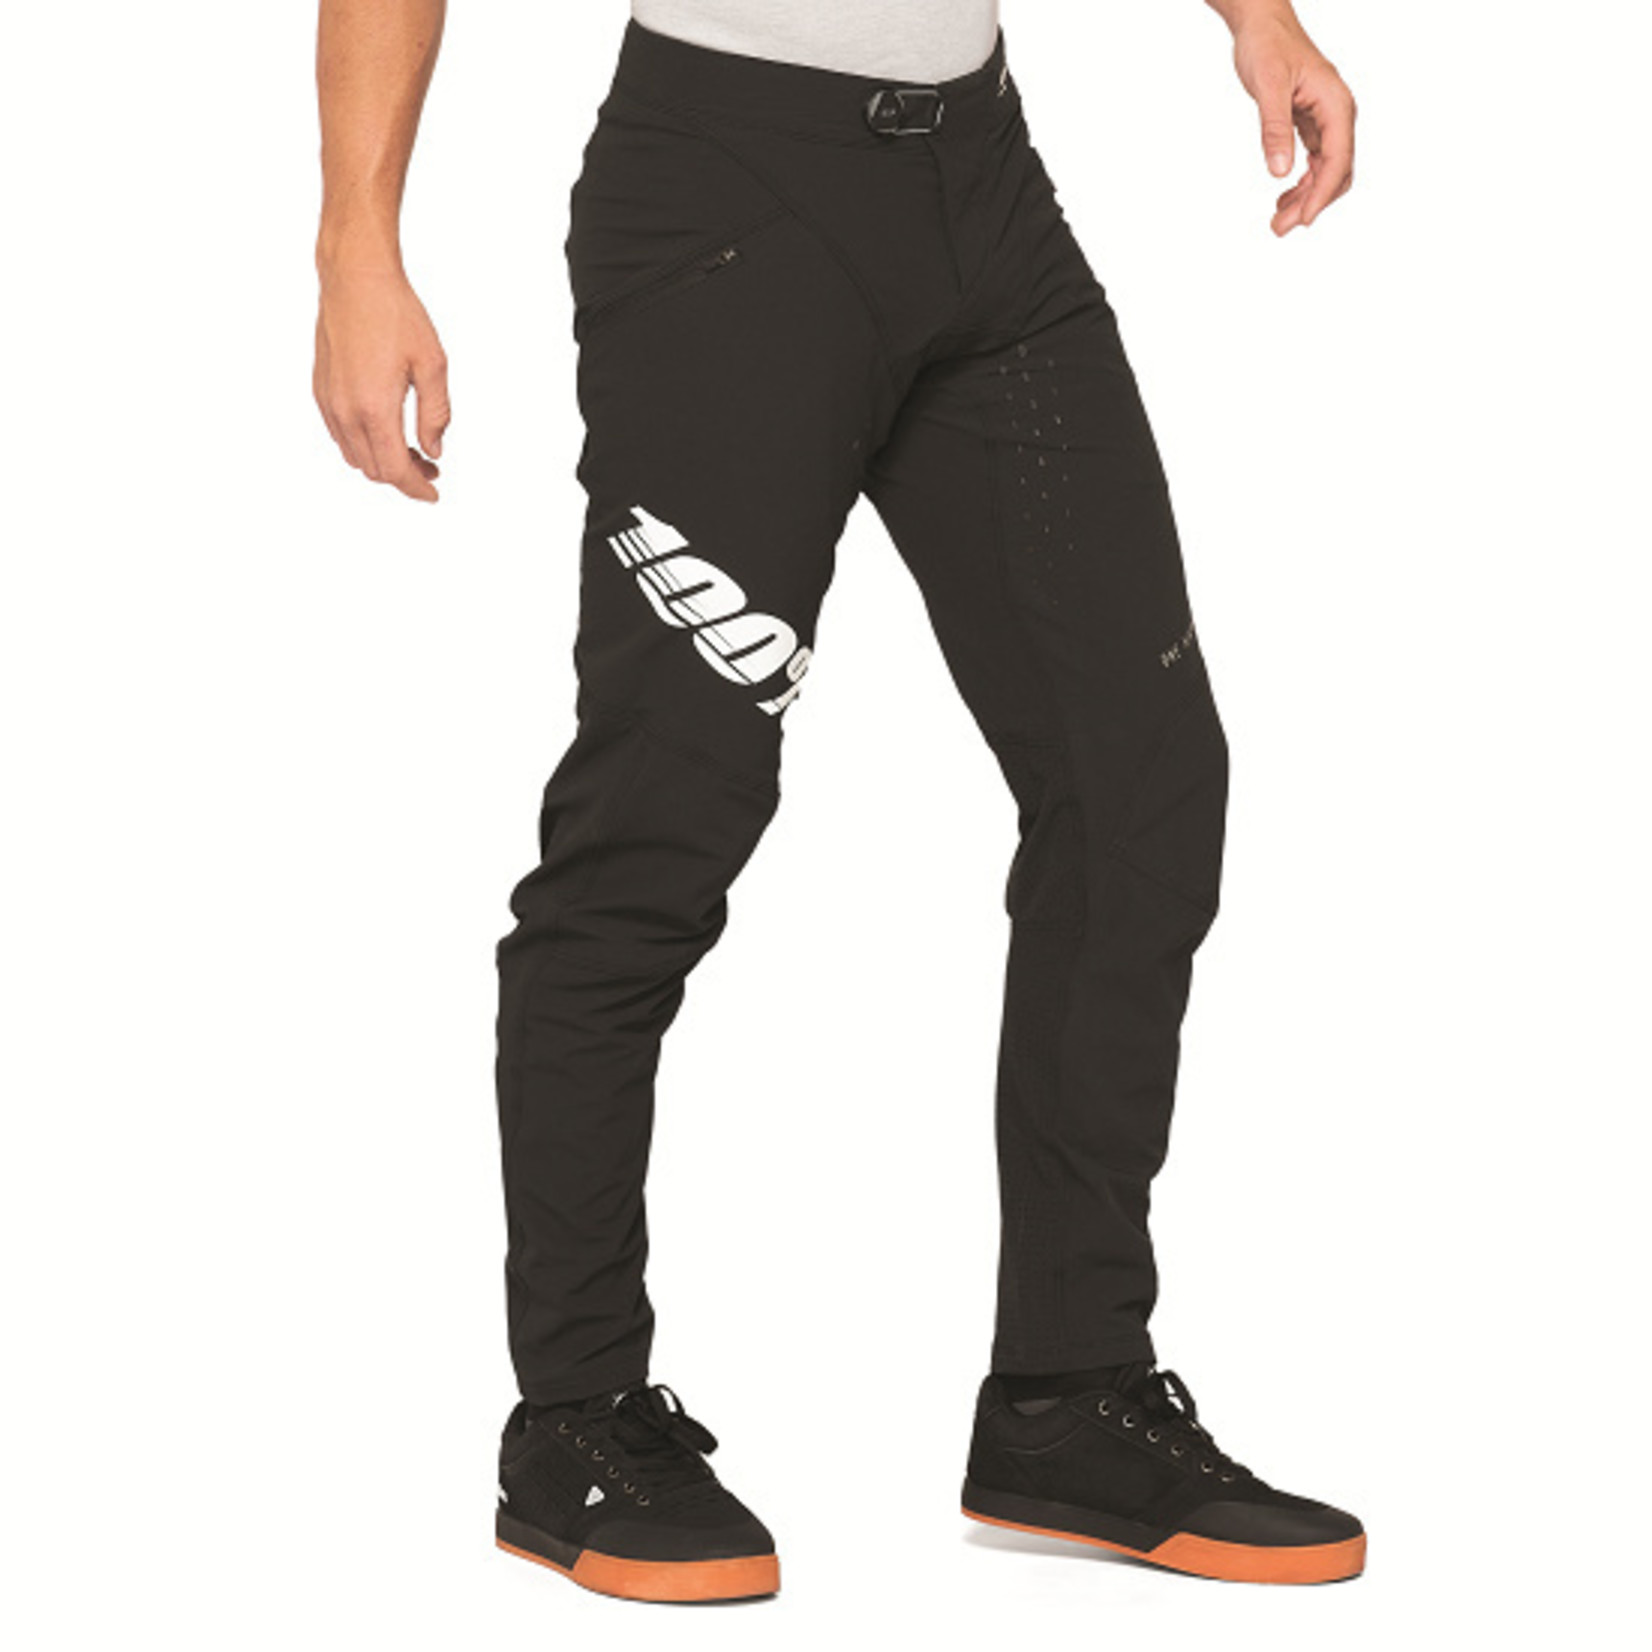 100% R-Core X Bike Gear Men's Downhill Pants - Black/White